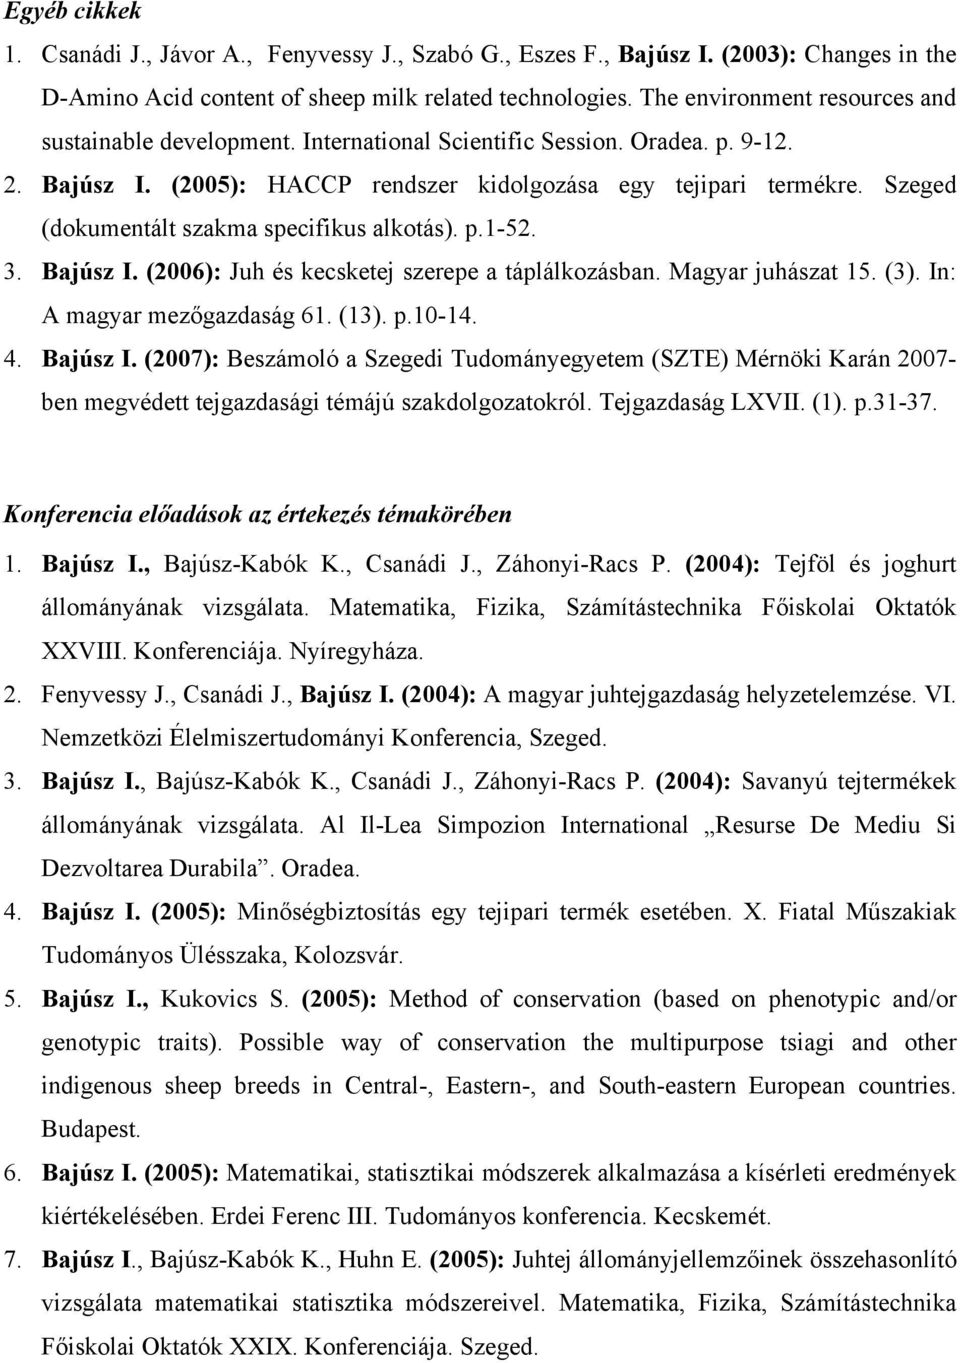 Szeged (dokumentált szakma specifikus alkotás). p.1-52. 3. Bajúsz I. (2006): Juh és kecsketej szerepe a táplálkozásban. Magyar juhászat 15. (3). In: A magyar mezőgazdaság 61. (13). p.10-14. 4.